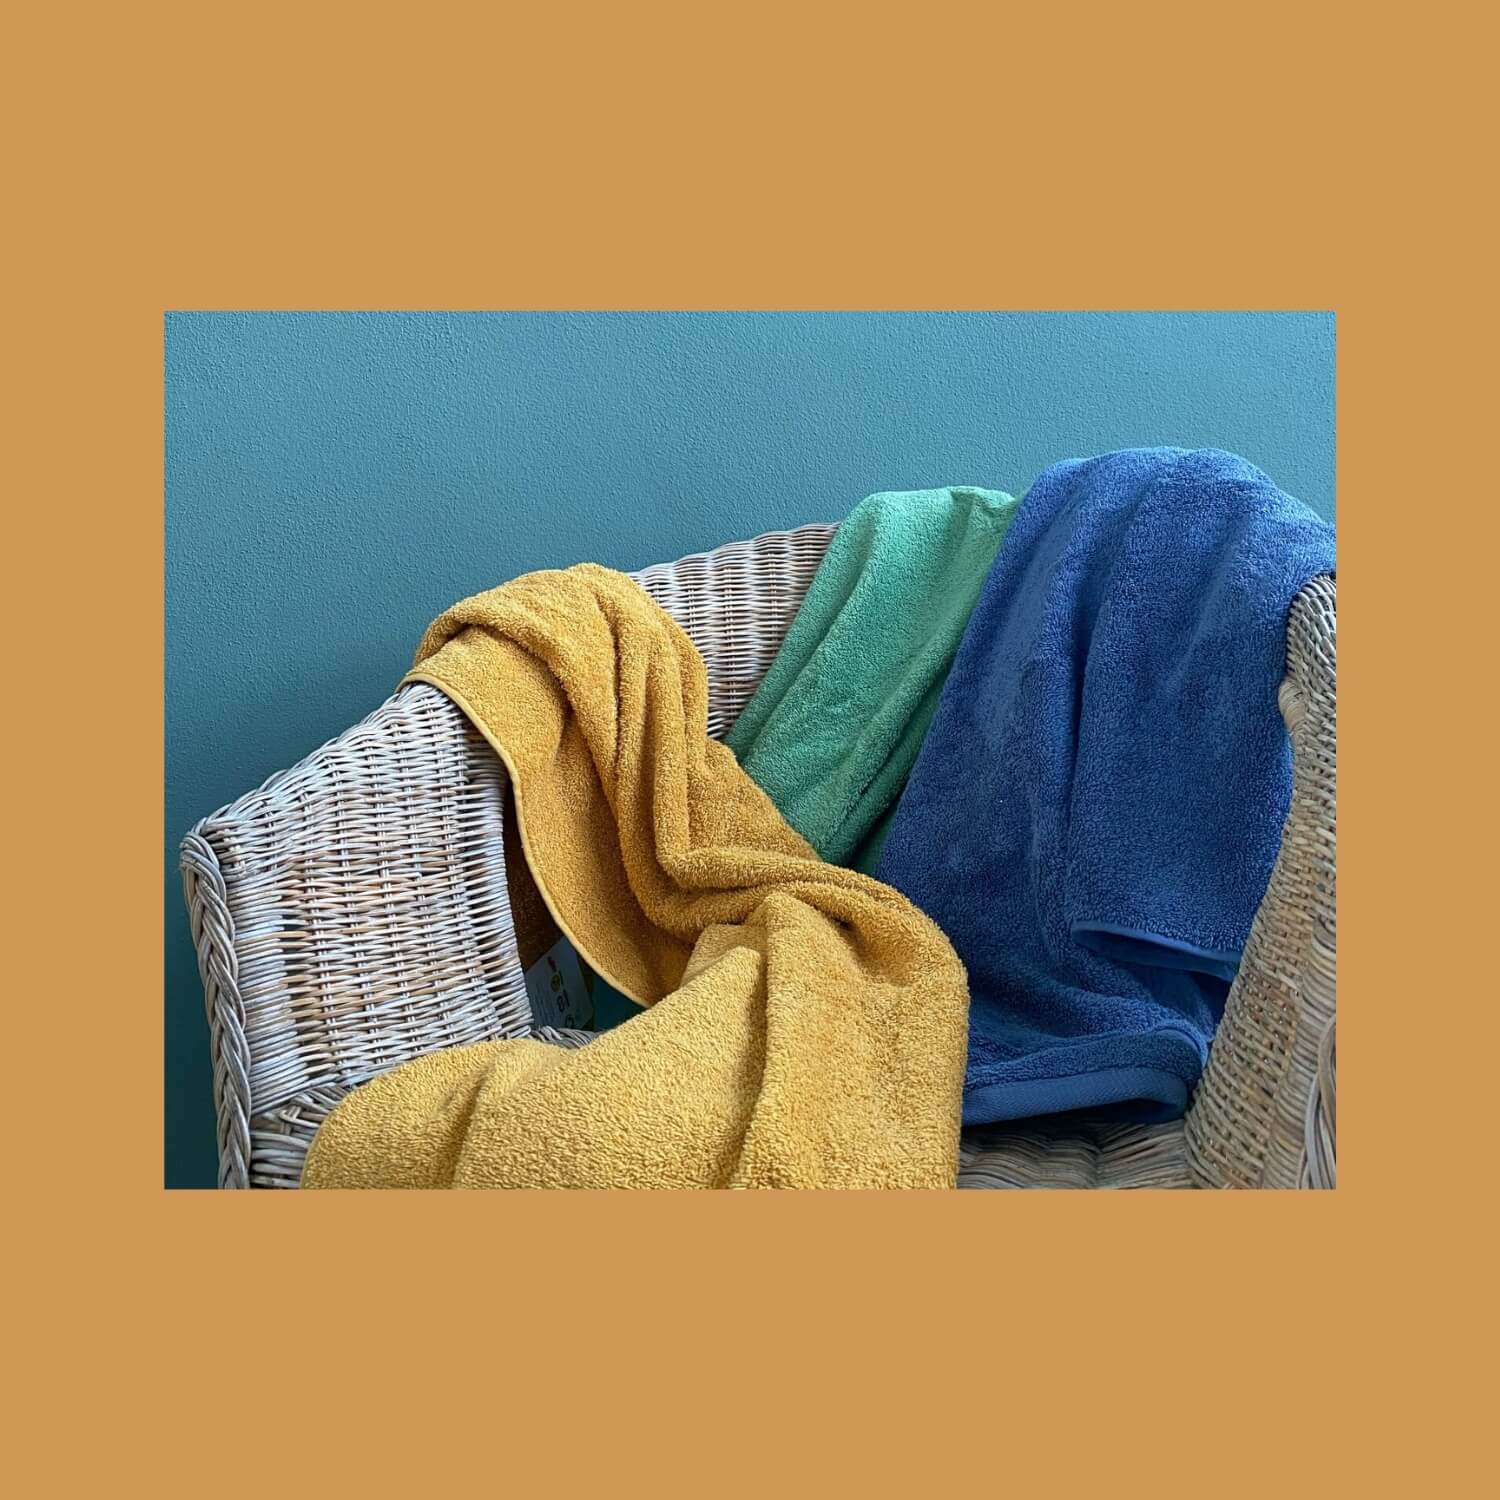 Håndklæder kastet hen over en stol. Farverne er karrygul, græsgrøn og gråblå.